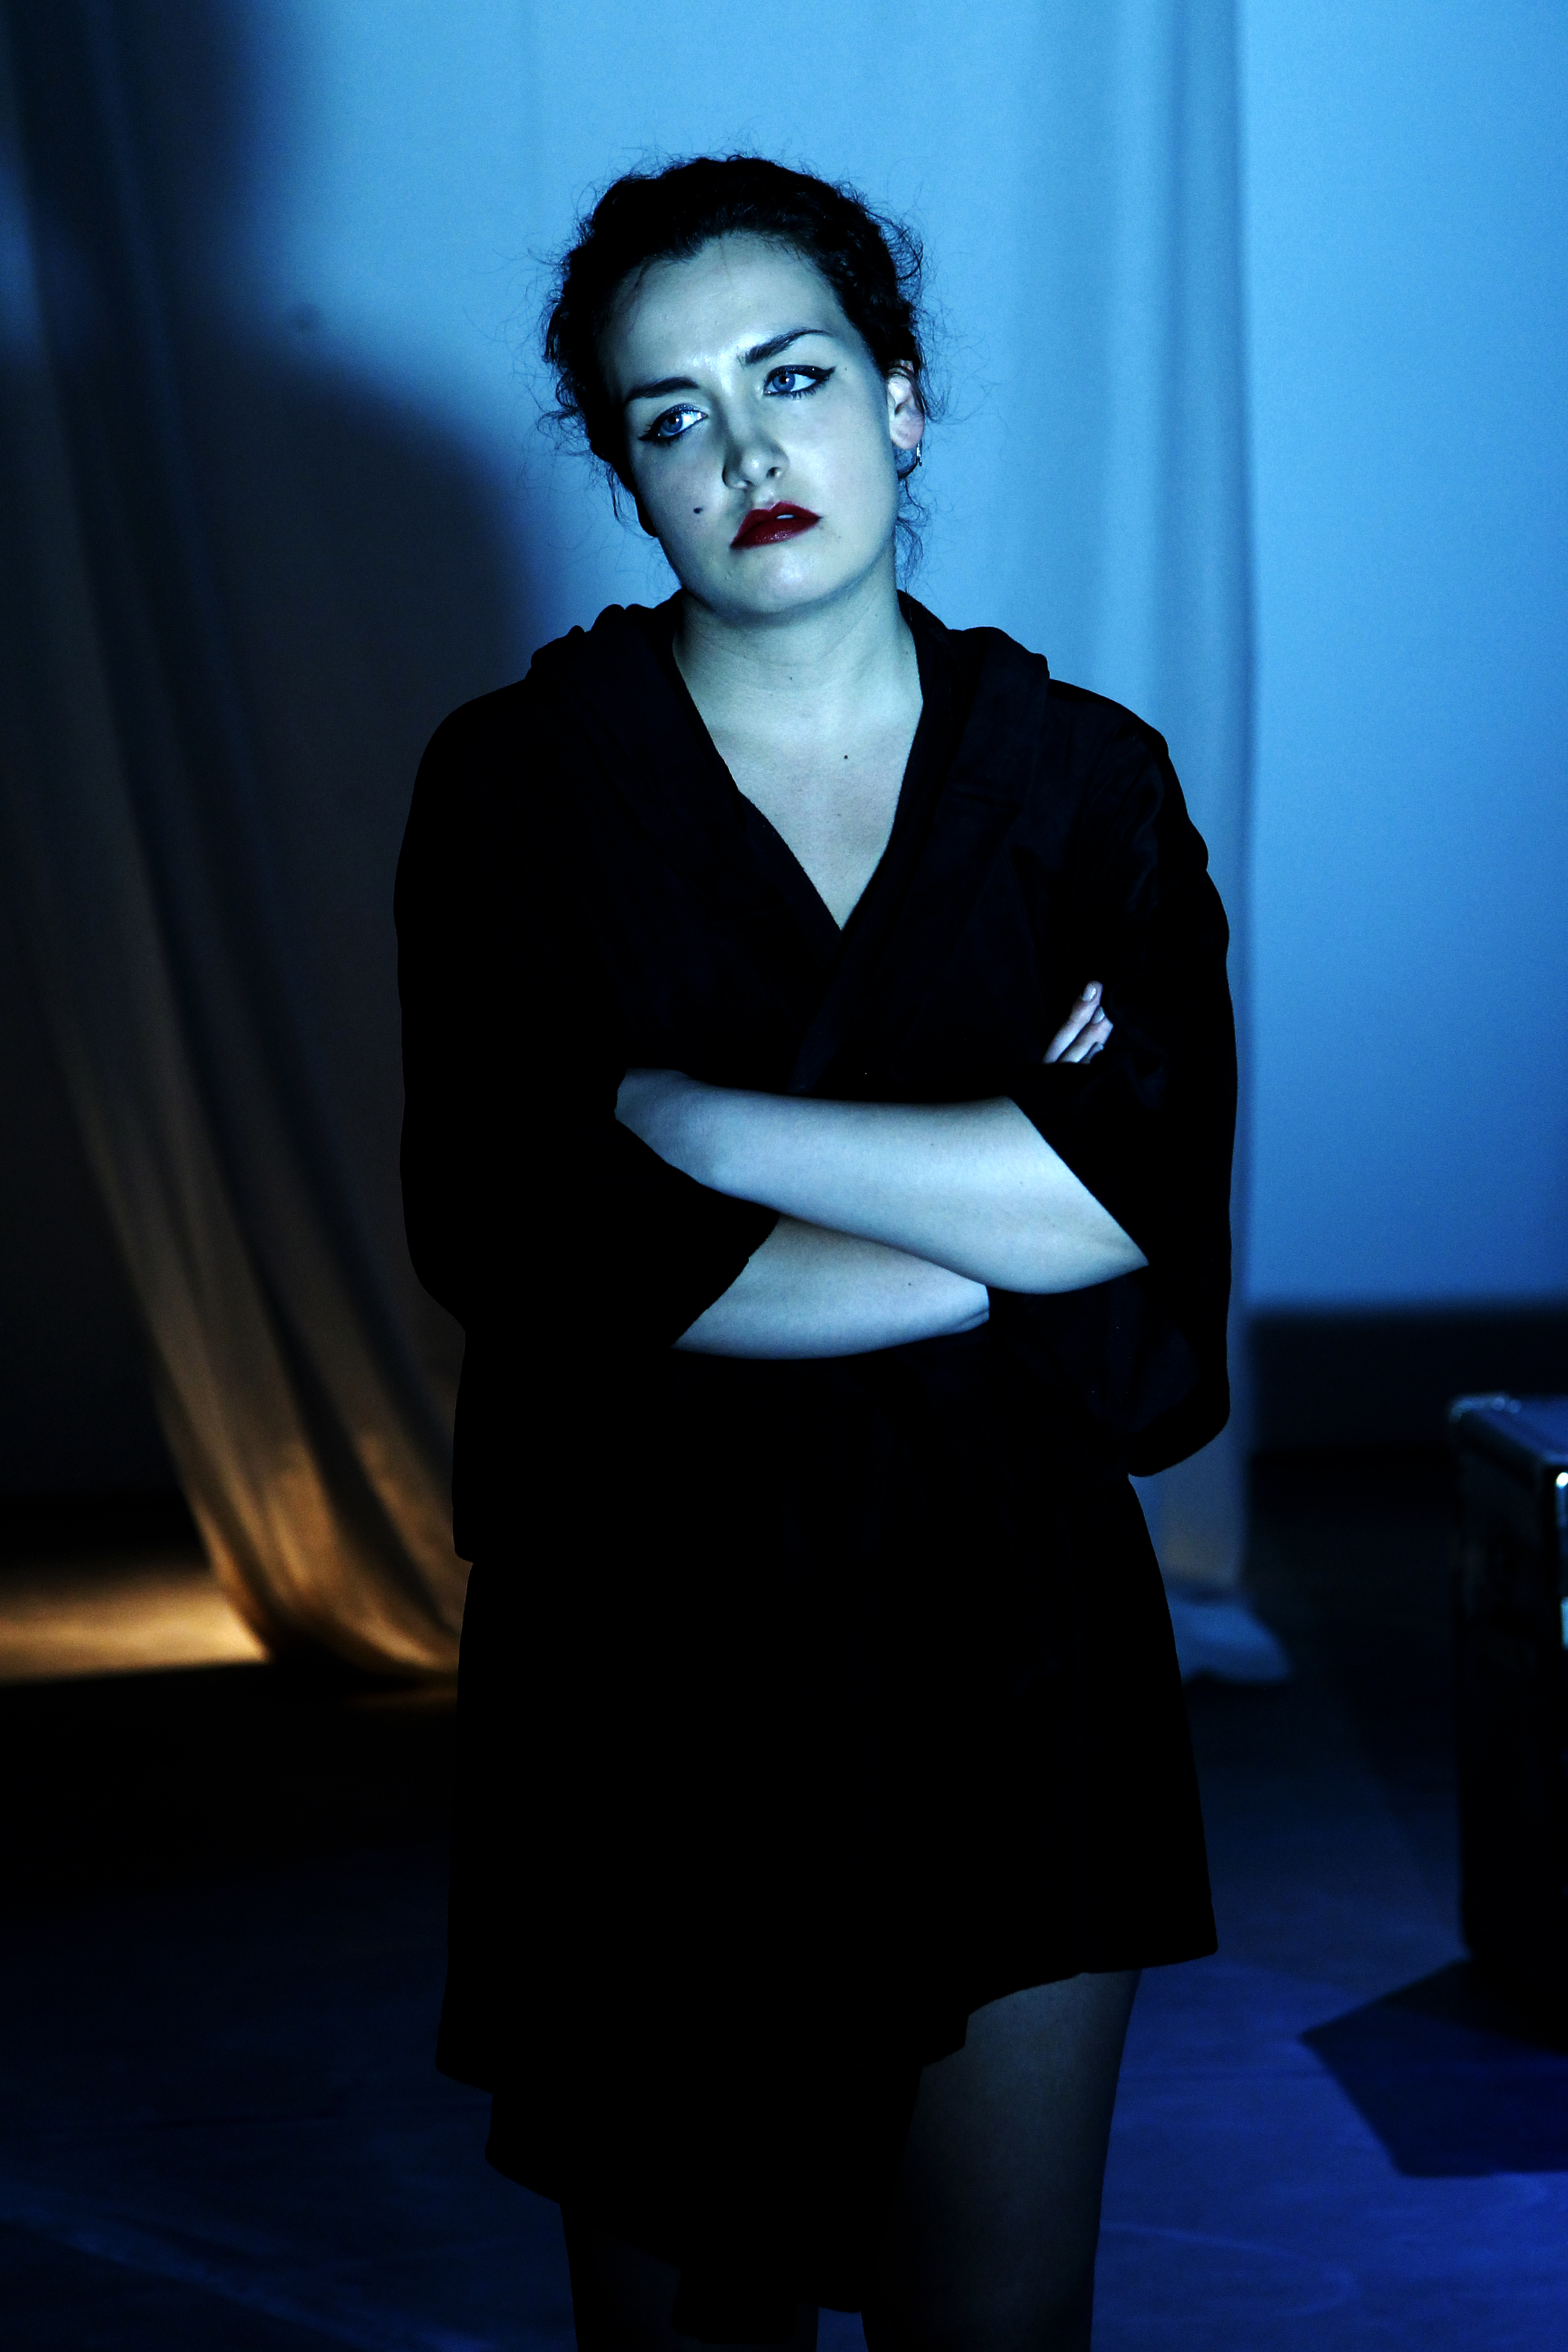 Still of Deborah Dominguez in La última noche, 2012